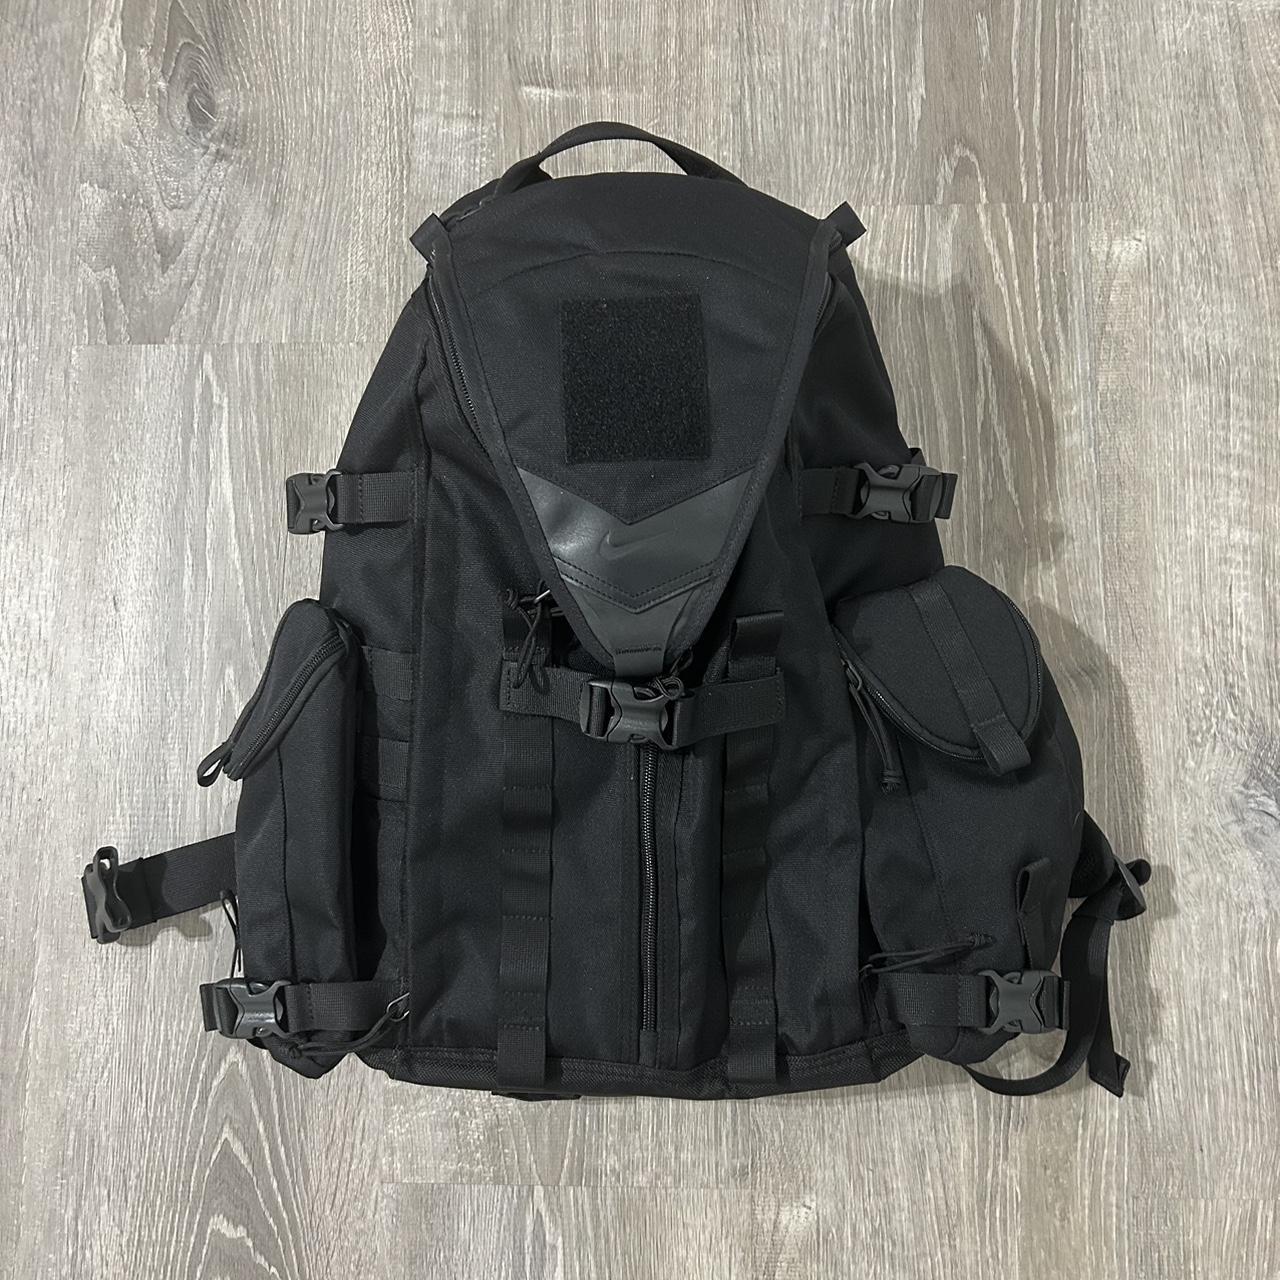 Nike backpack - Depop